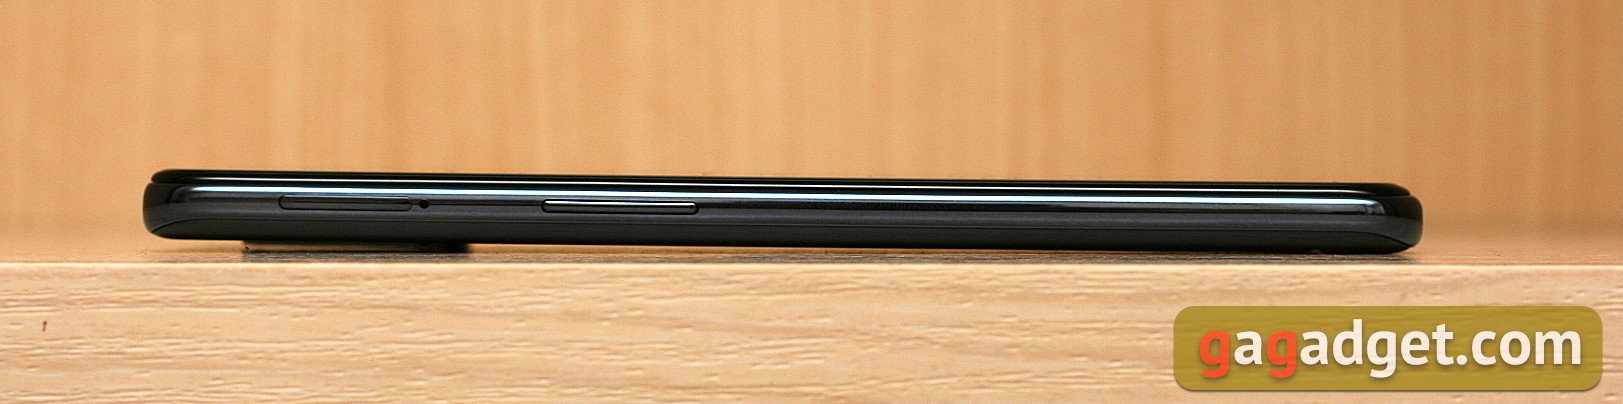 Обзор OnePlus Nord N10 5G: средний класс создателей «убийц флагманов»-5